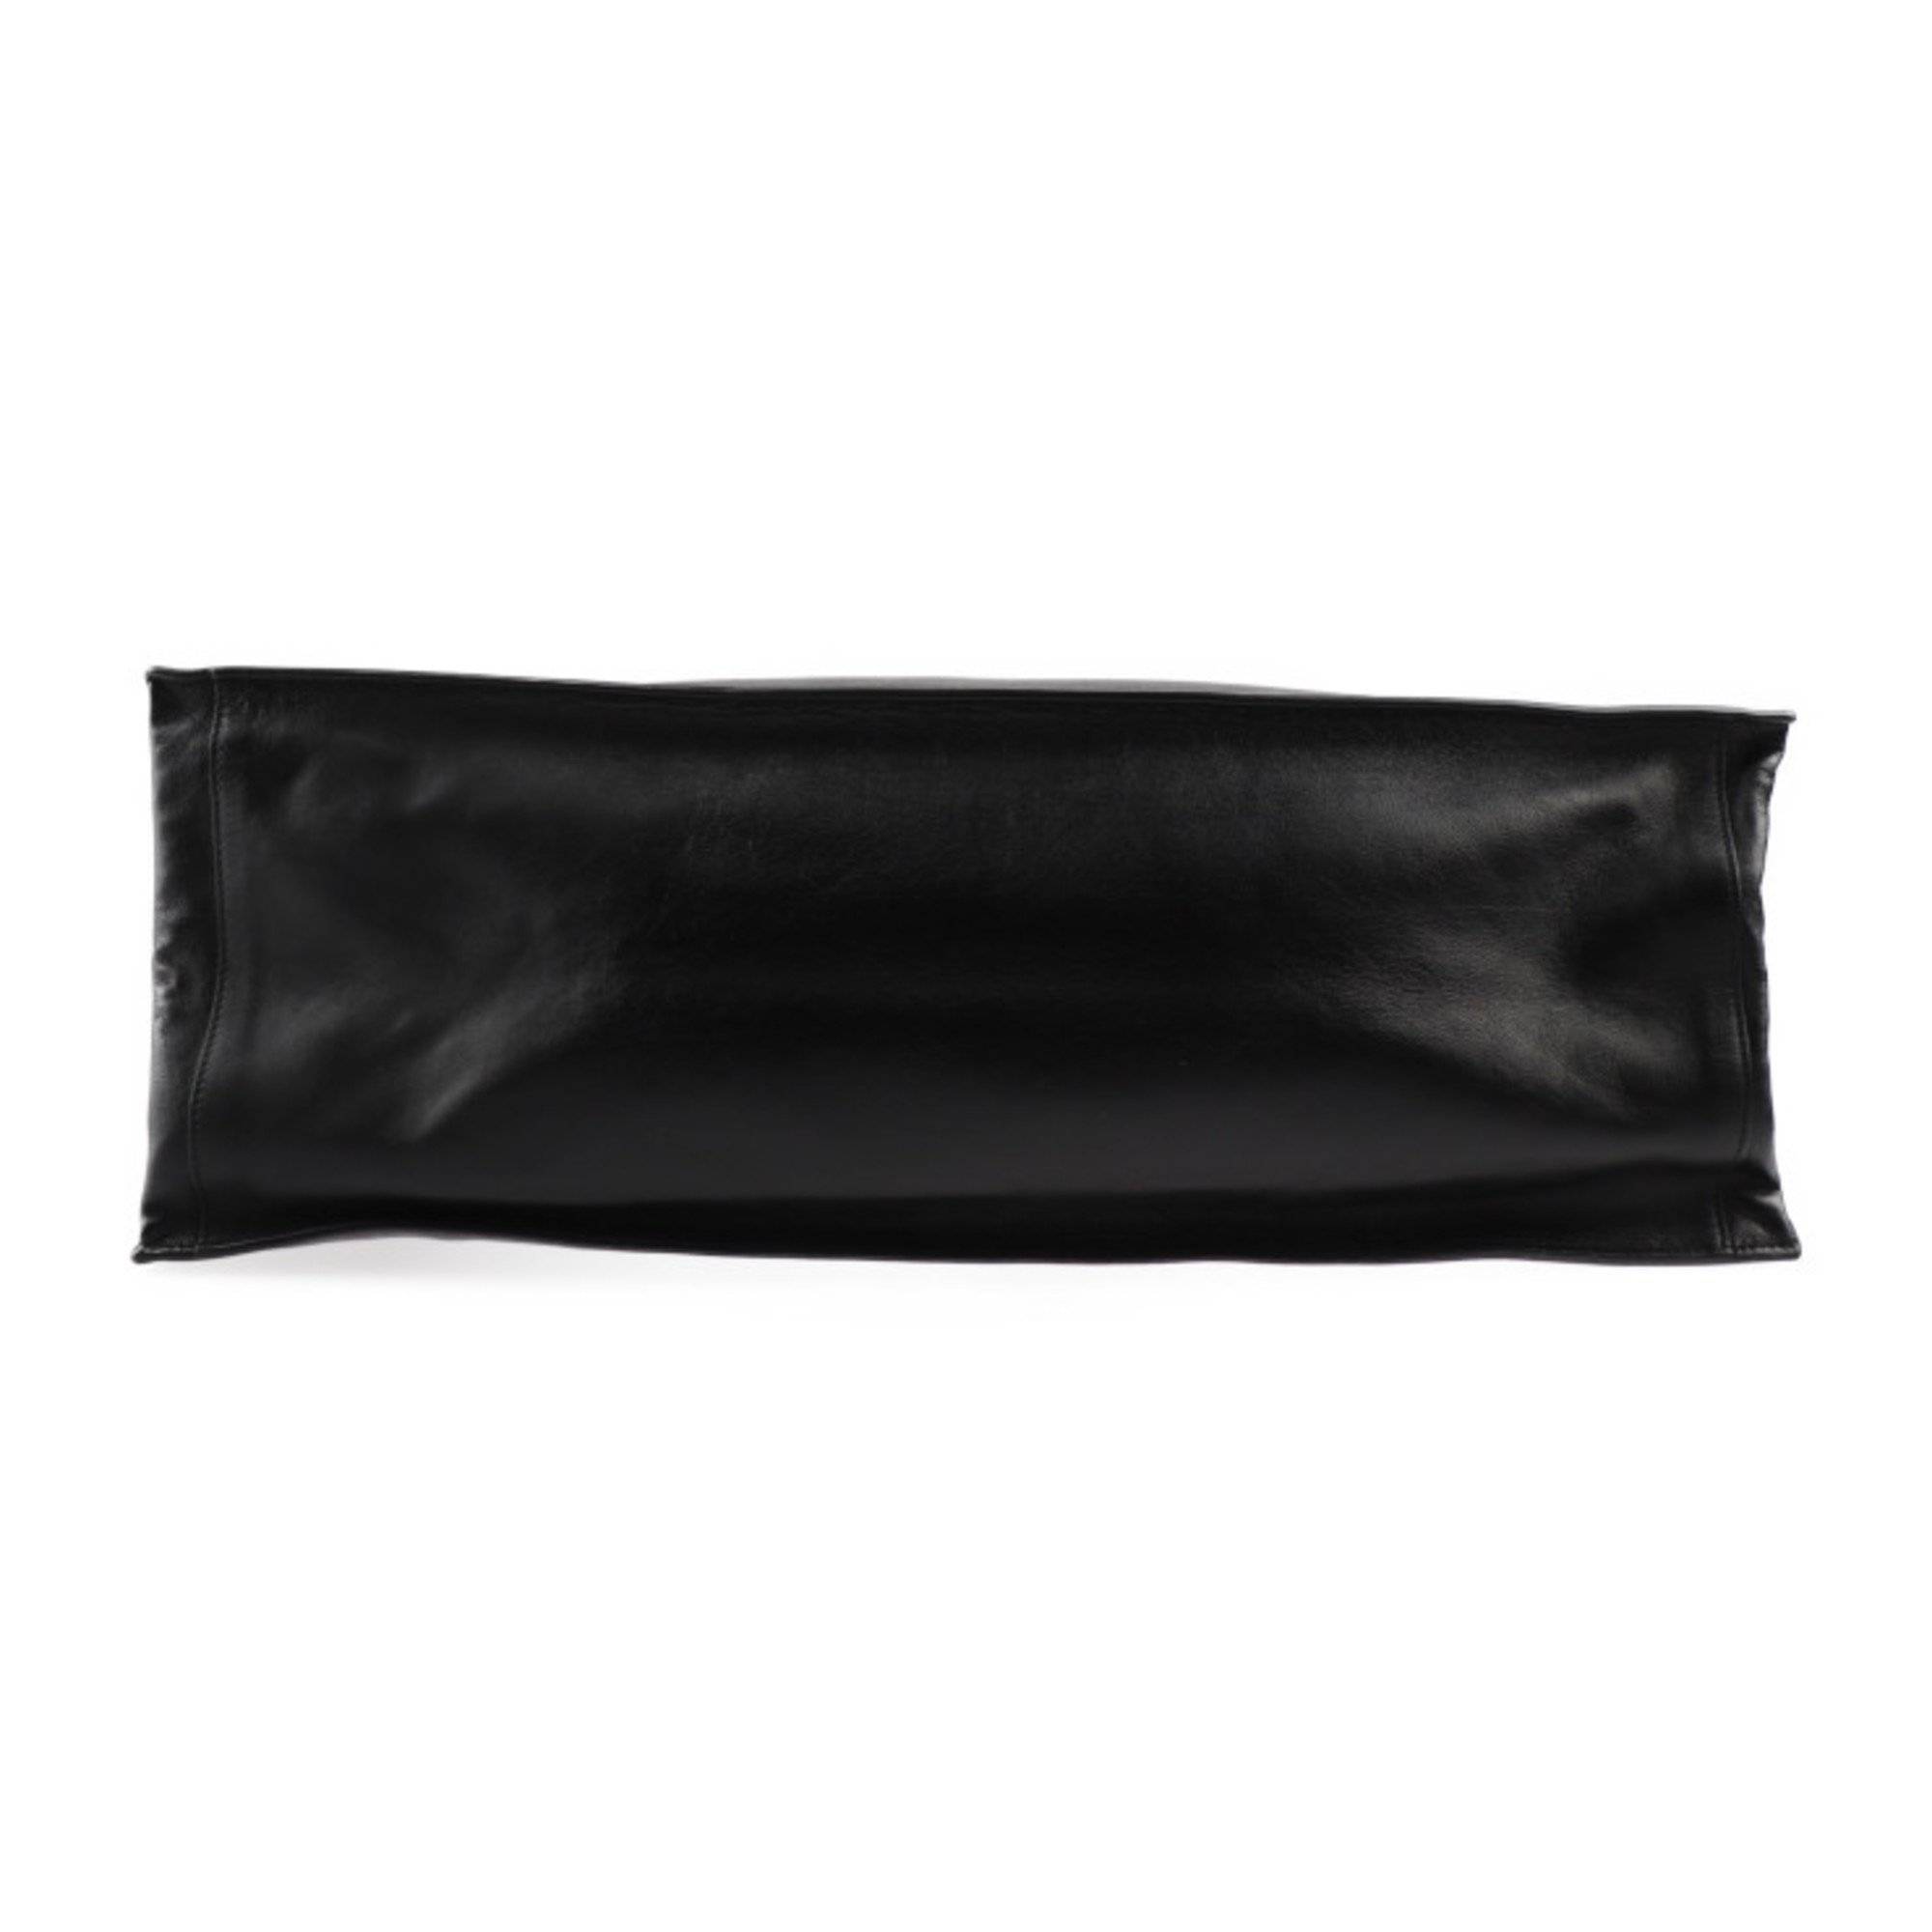 Yves Saint Laurent SAINT LAURENT PARIS Saint Laurent Paris Rive Gauche Tote Bag 587273 Leather Black Handbag